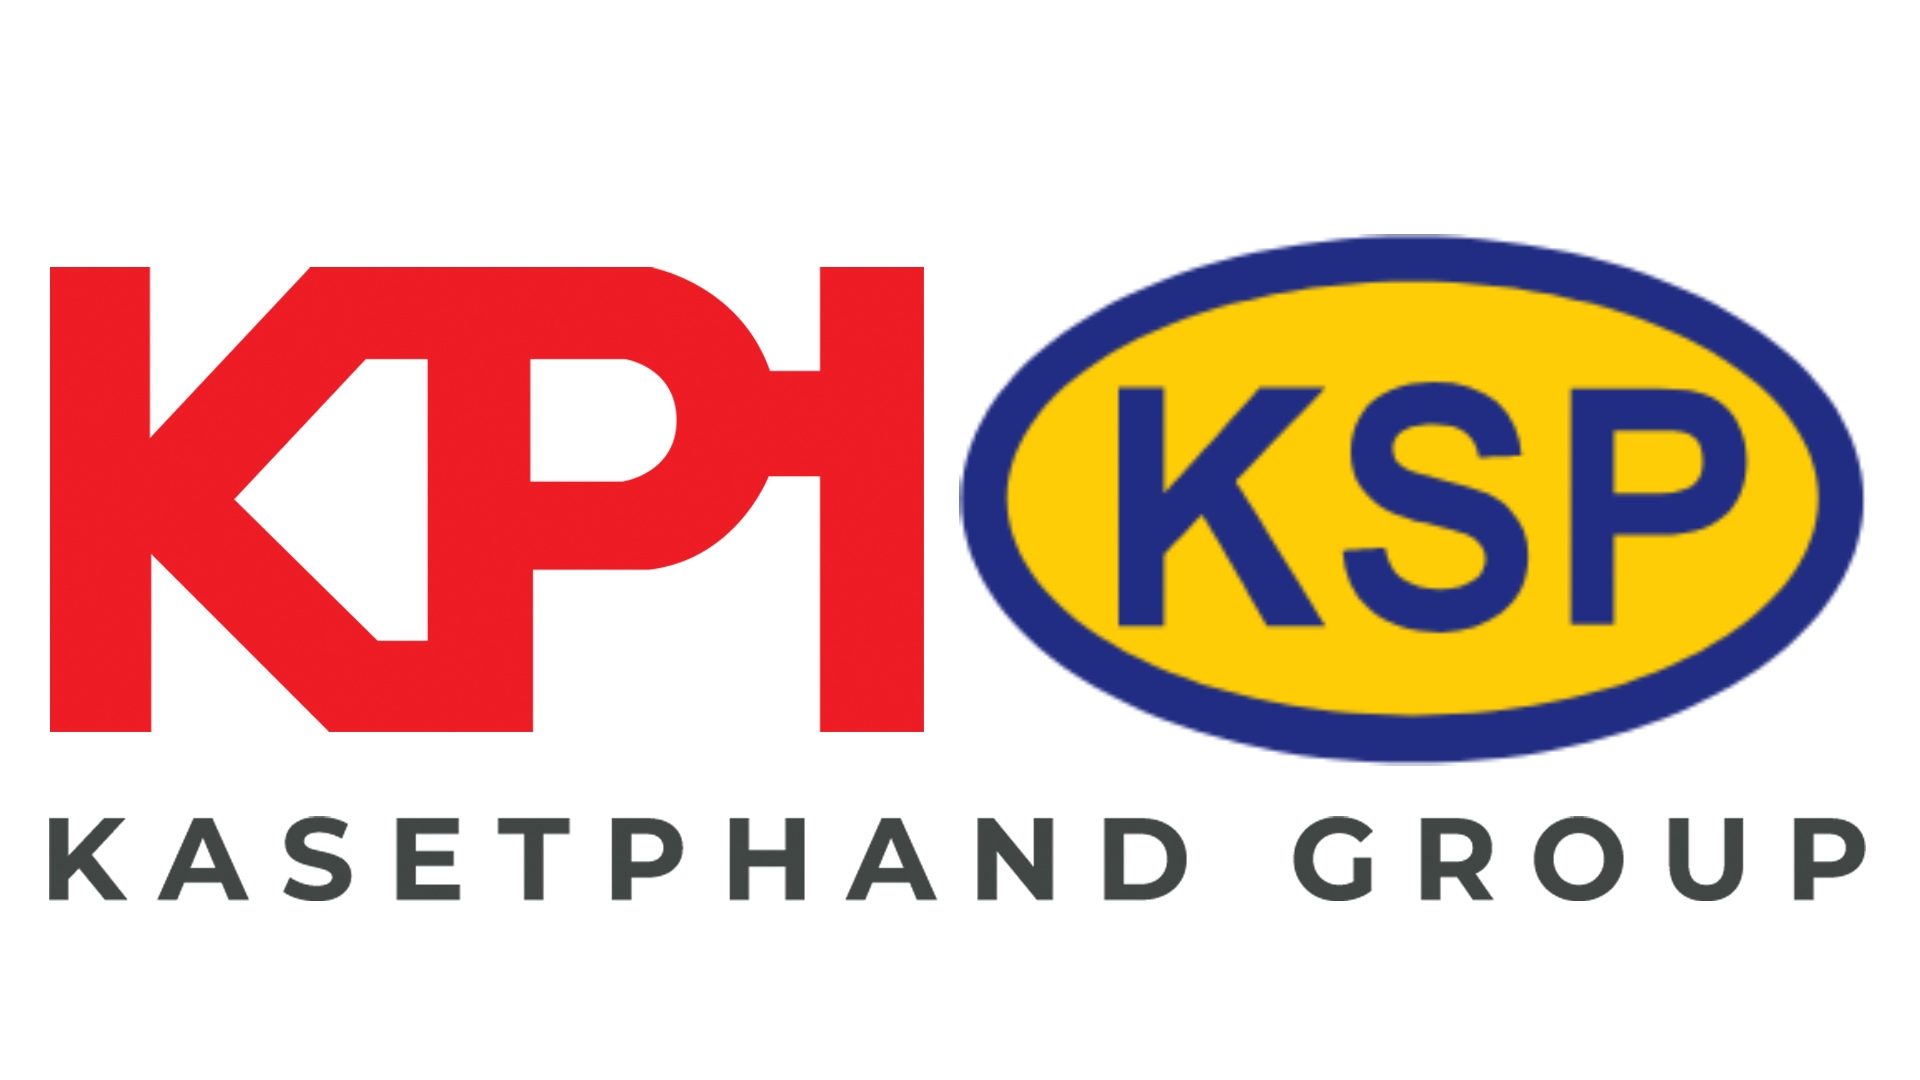 Kasetphand Group